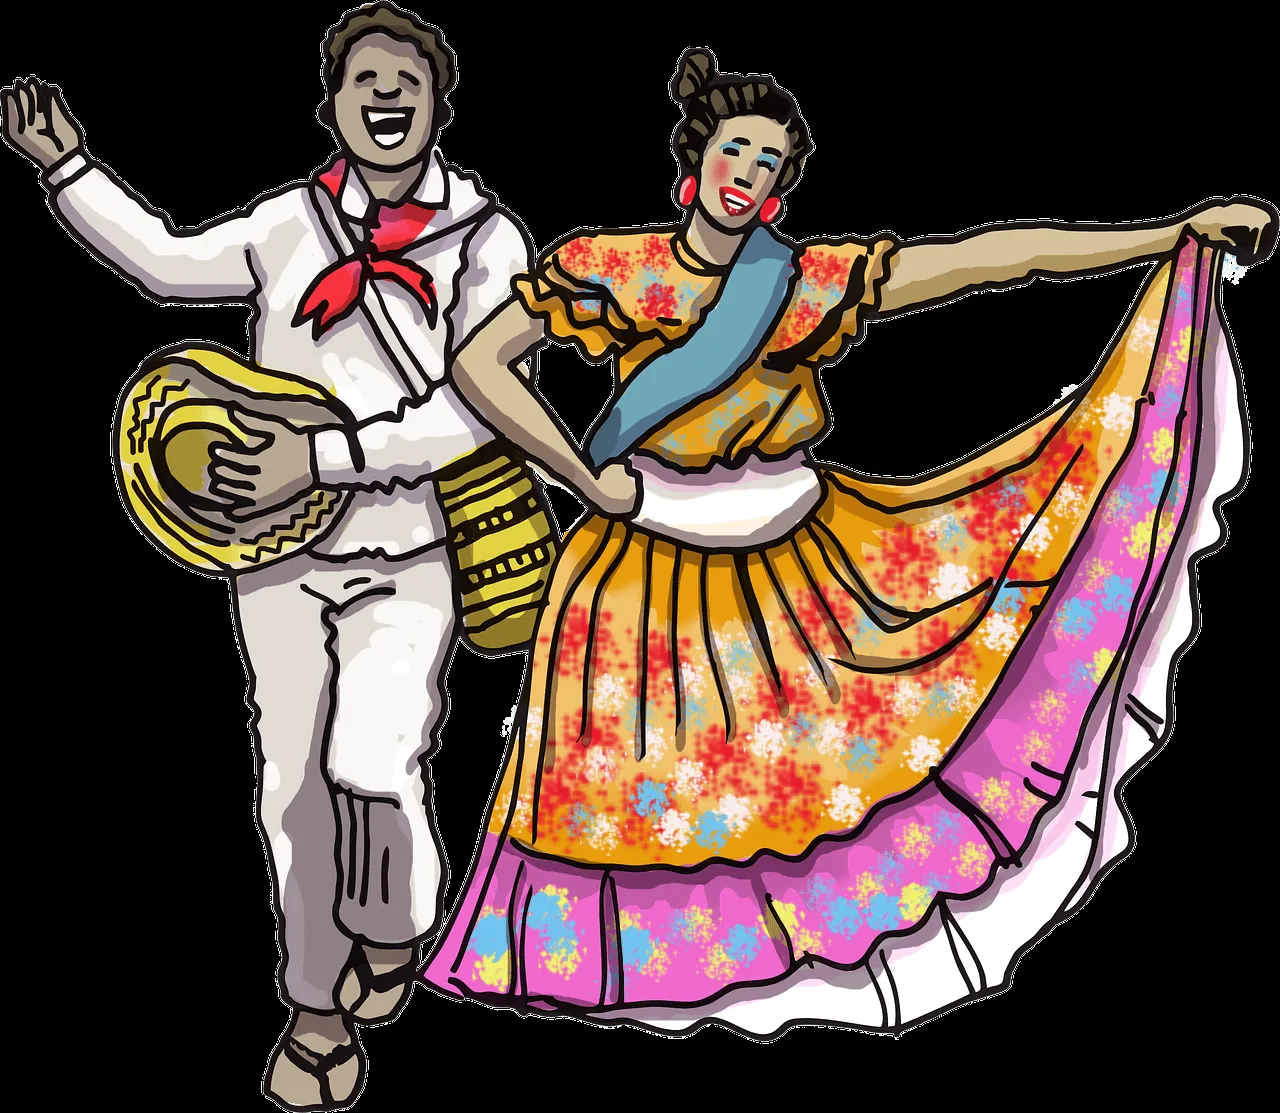 Danza Pareja Cumbia - Imagen gratis en Pixabay - Pixabay